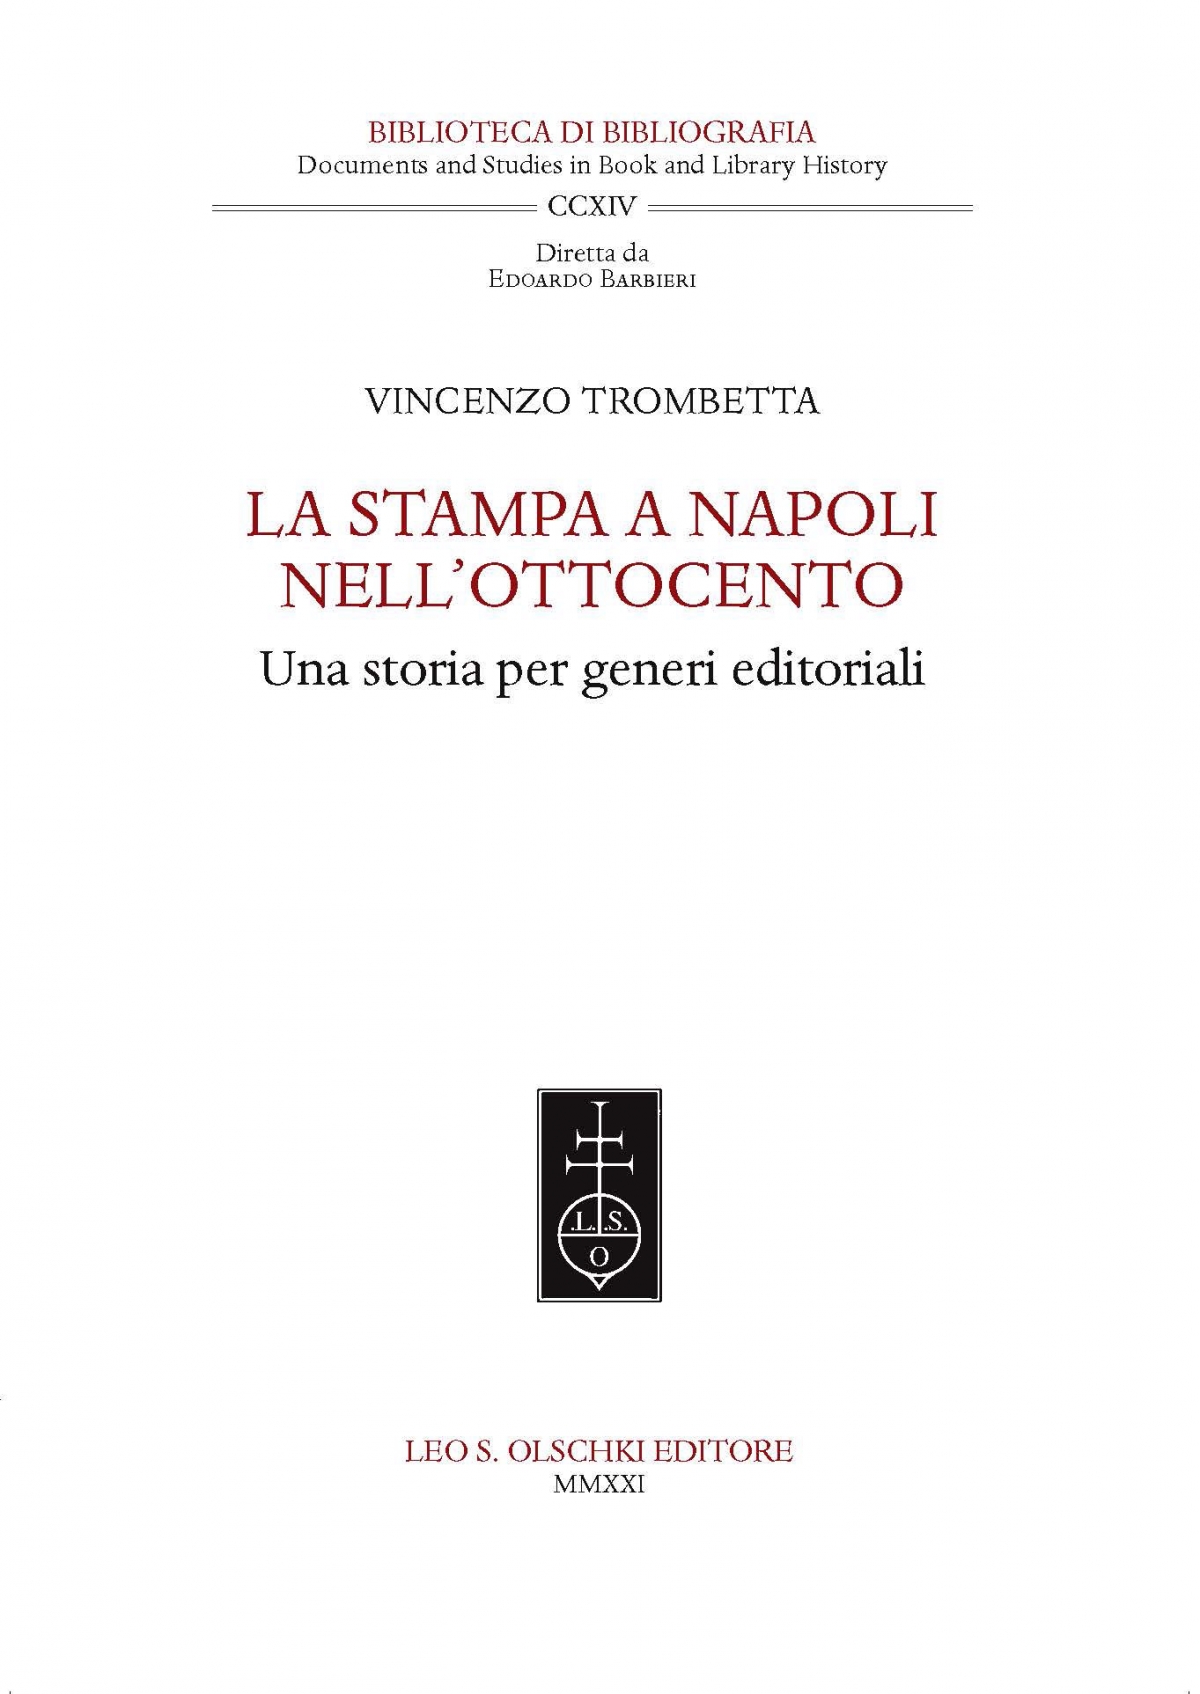 La stampa a Napoli nell’Ottocento. Una storia per generi editoriali